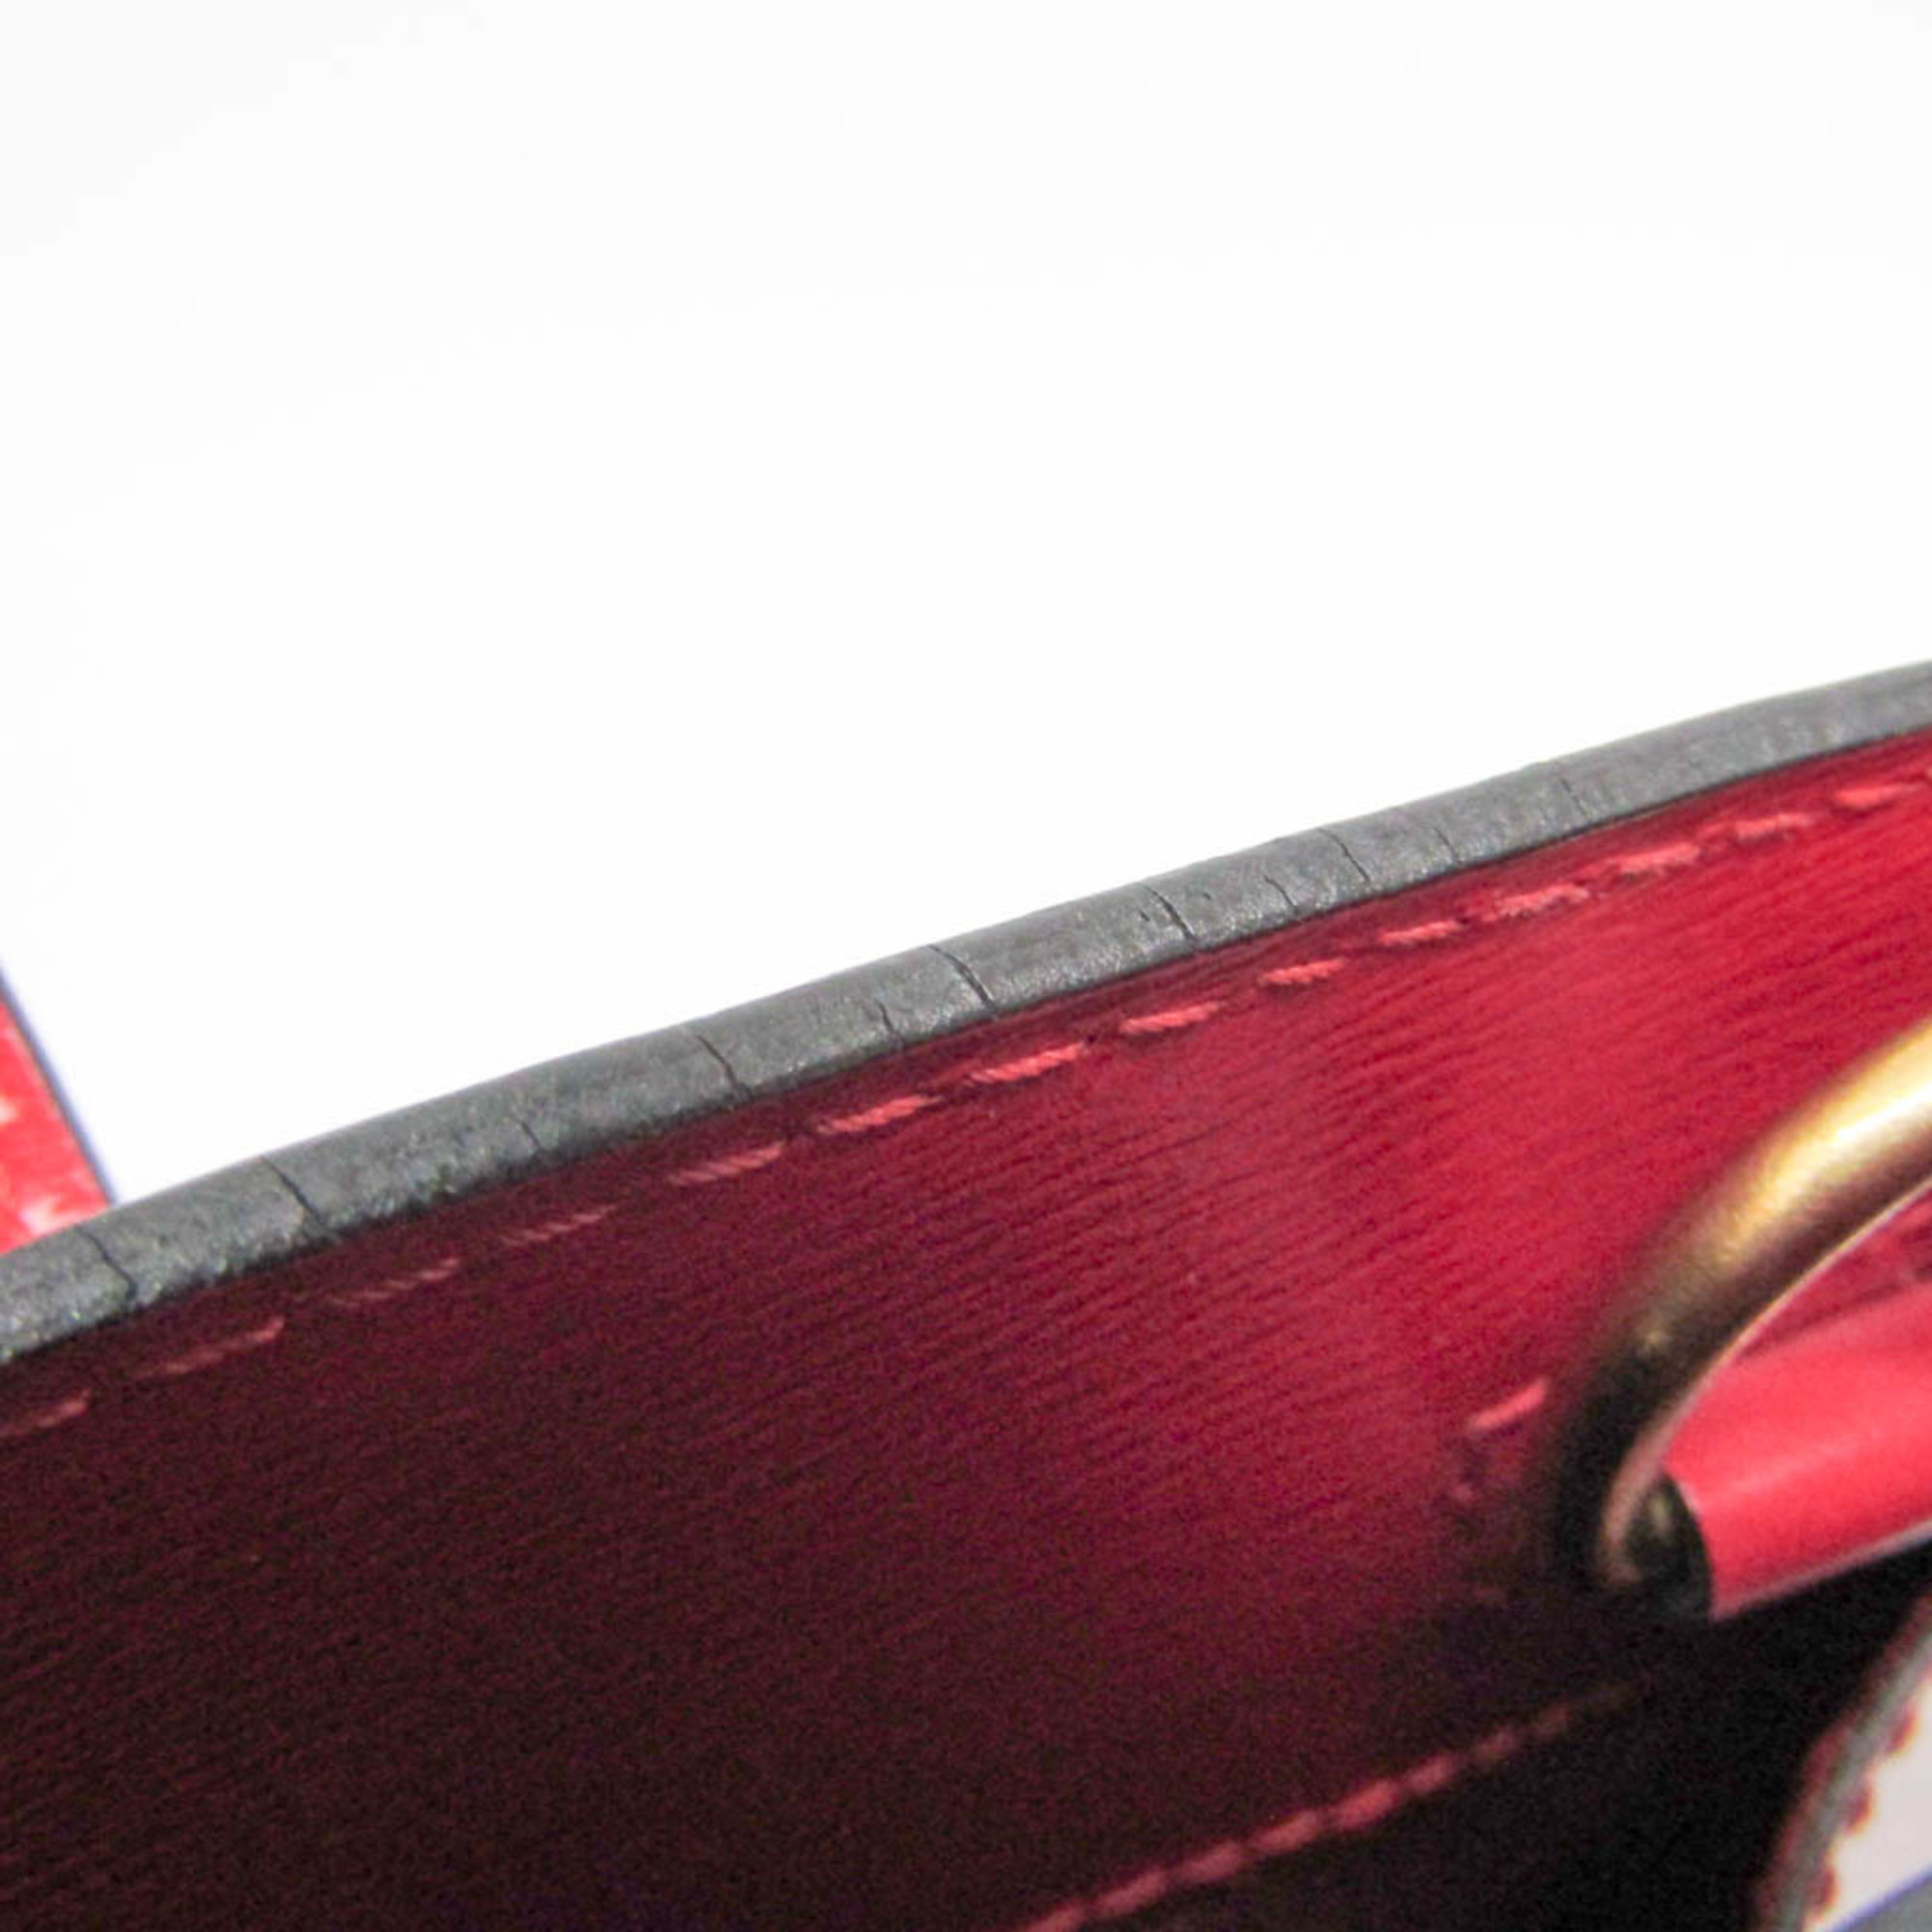 ルイ・ヴィトン(Louis Vuitton) エピ クリュニー M52257 レディース ショルダーバッグ カスティリアンレッド